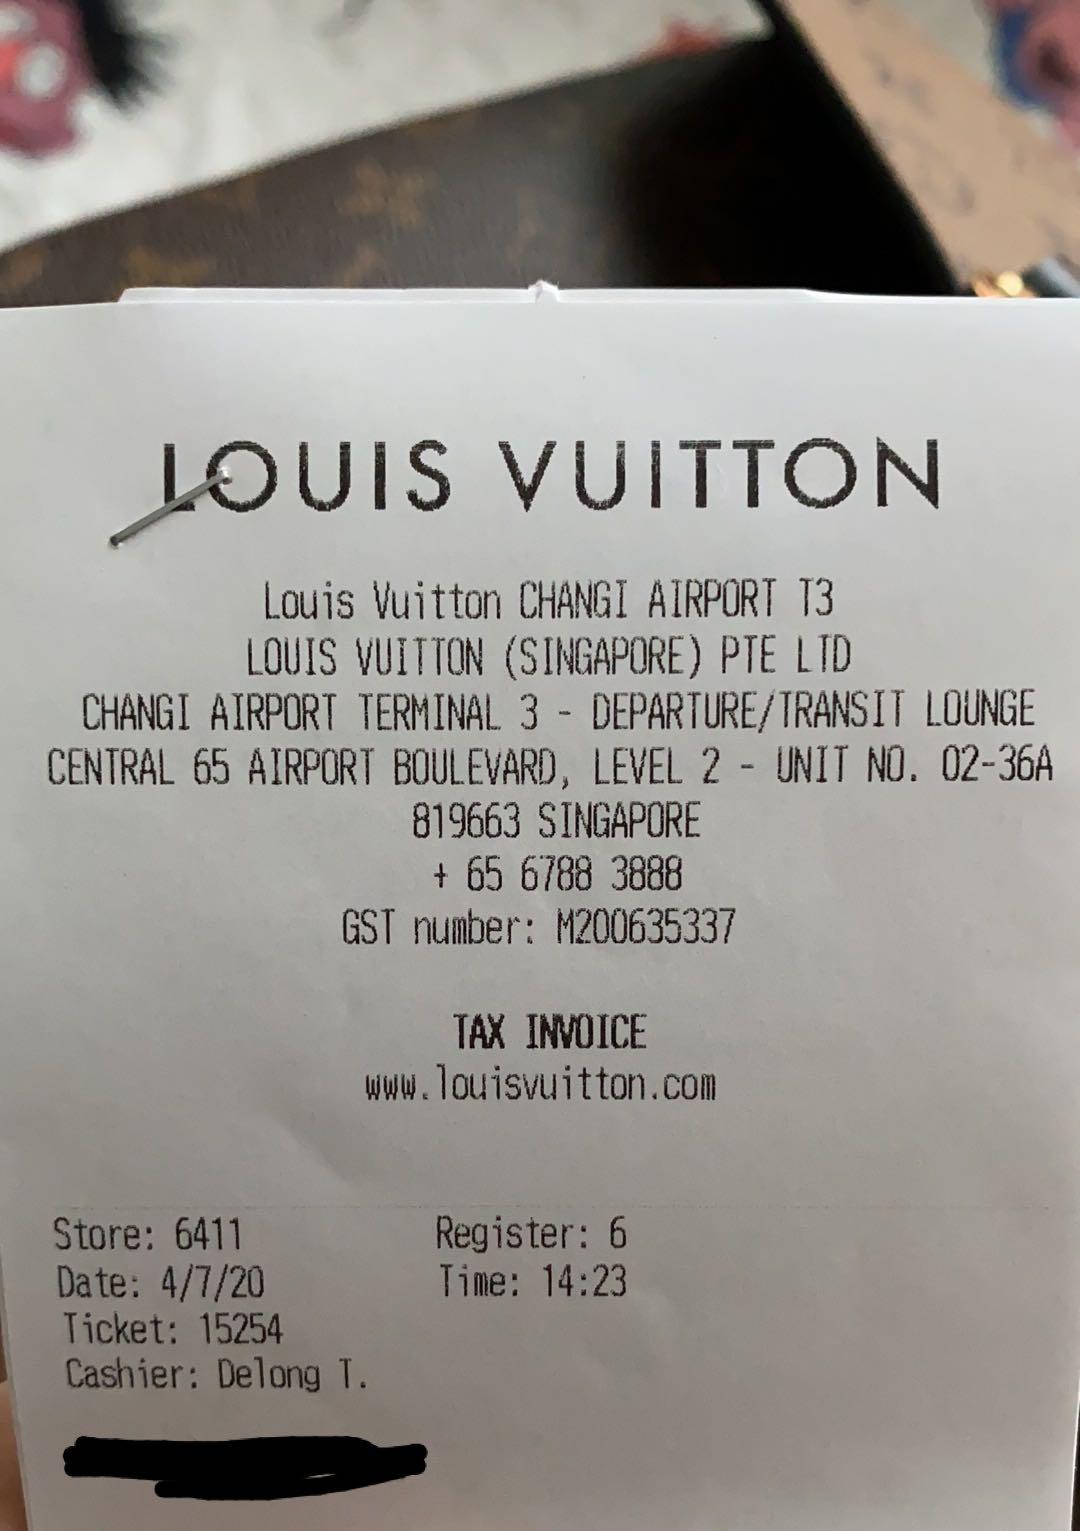 Louis Vuitton Template Receipt